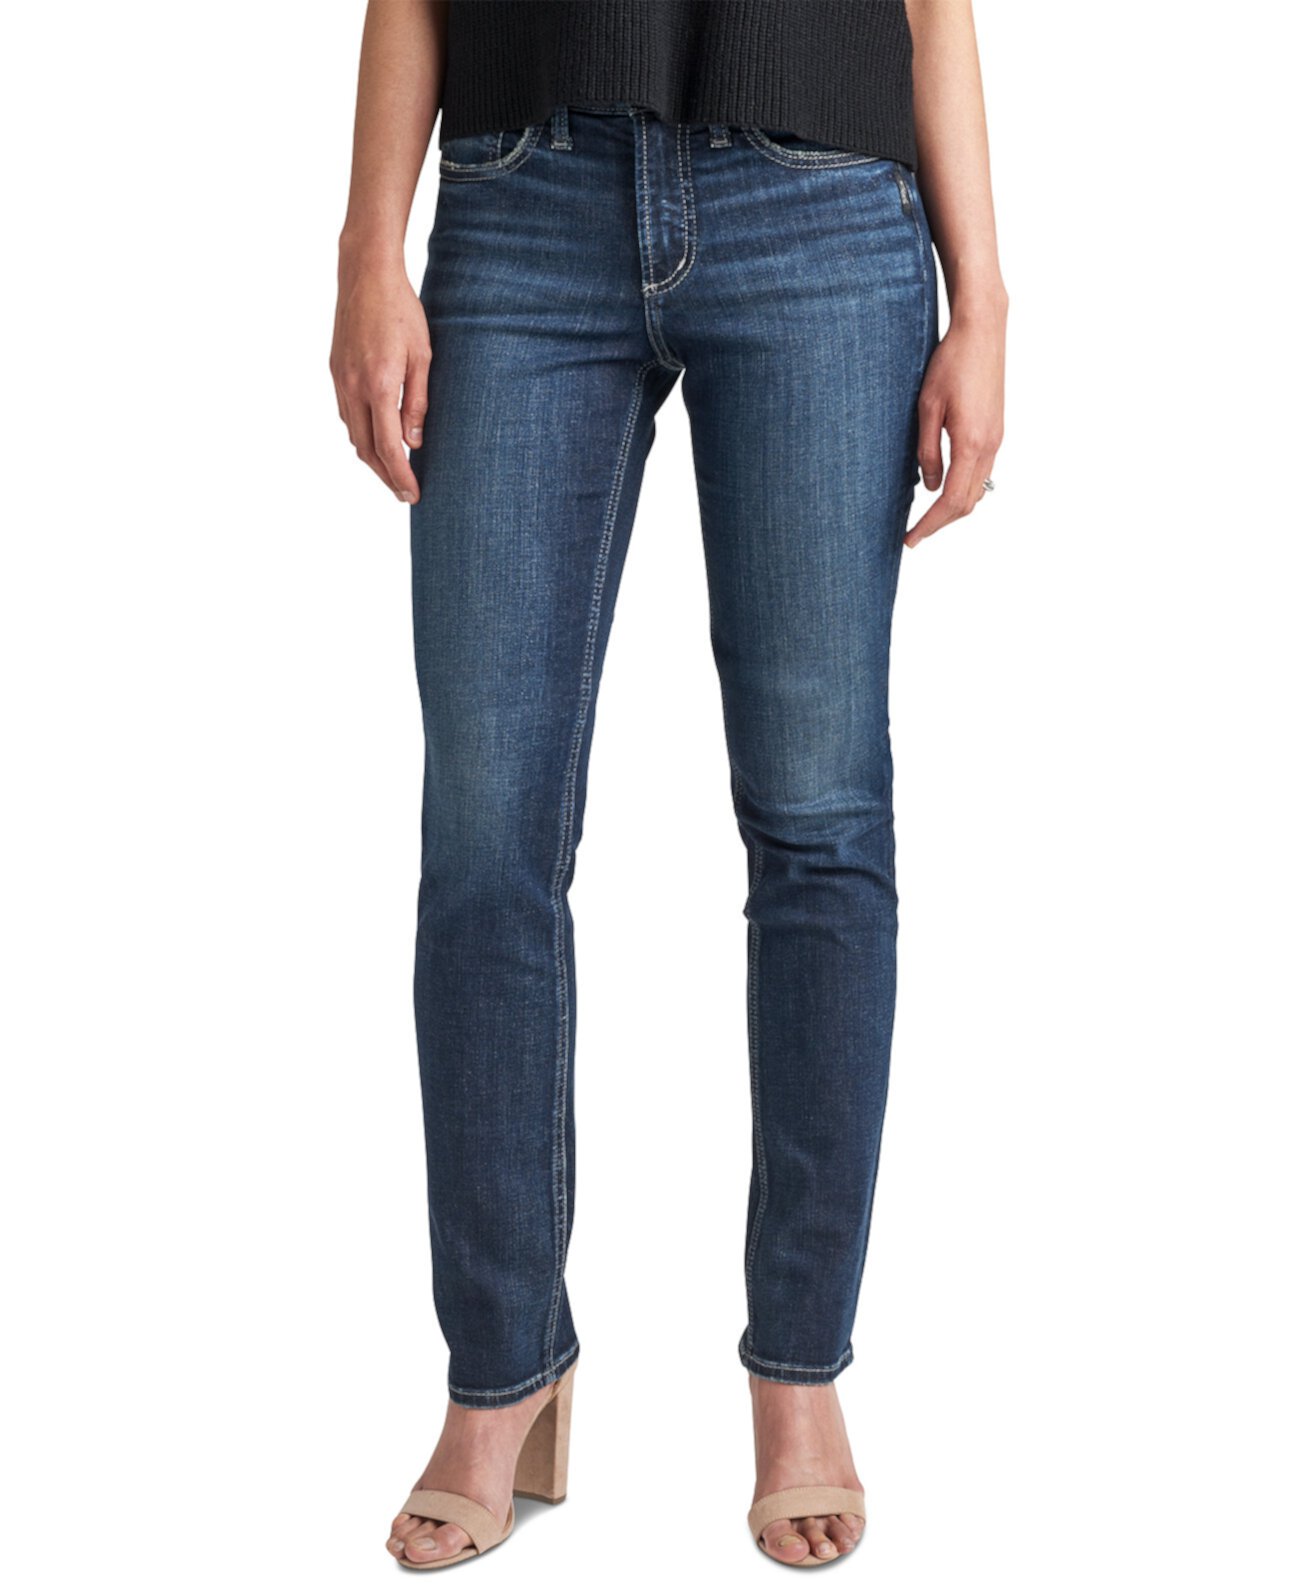 Самые популярные джинсы прямого кроя Silver Jeans Co.